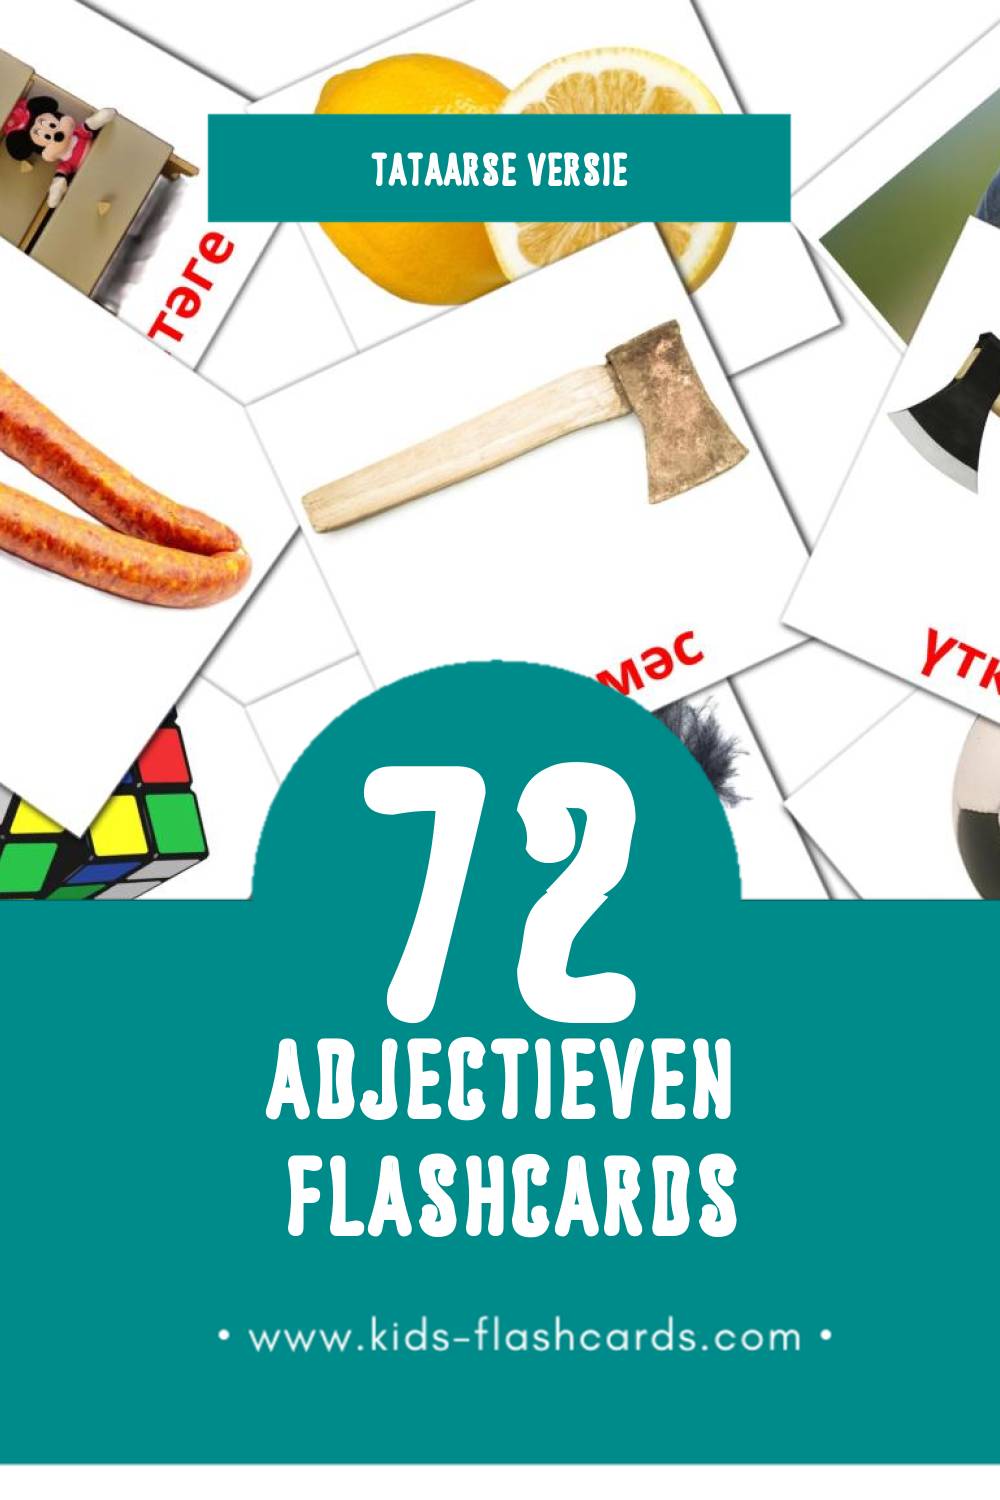 Visuele Сыйфат Flashcards voor Kleuters (72 kaarten in het Tataars)